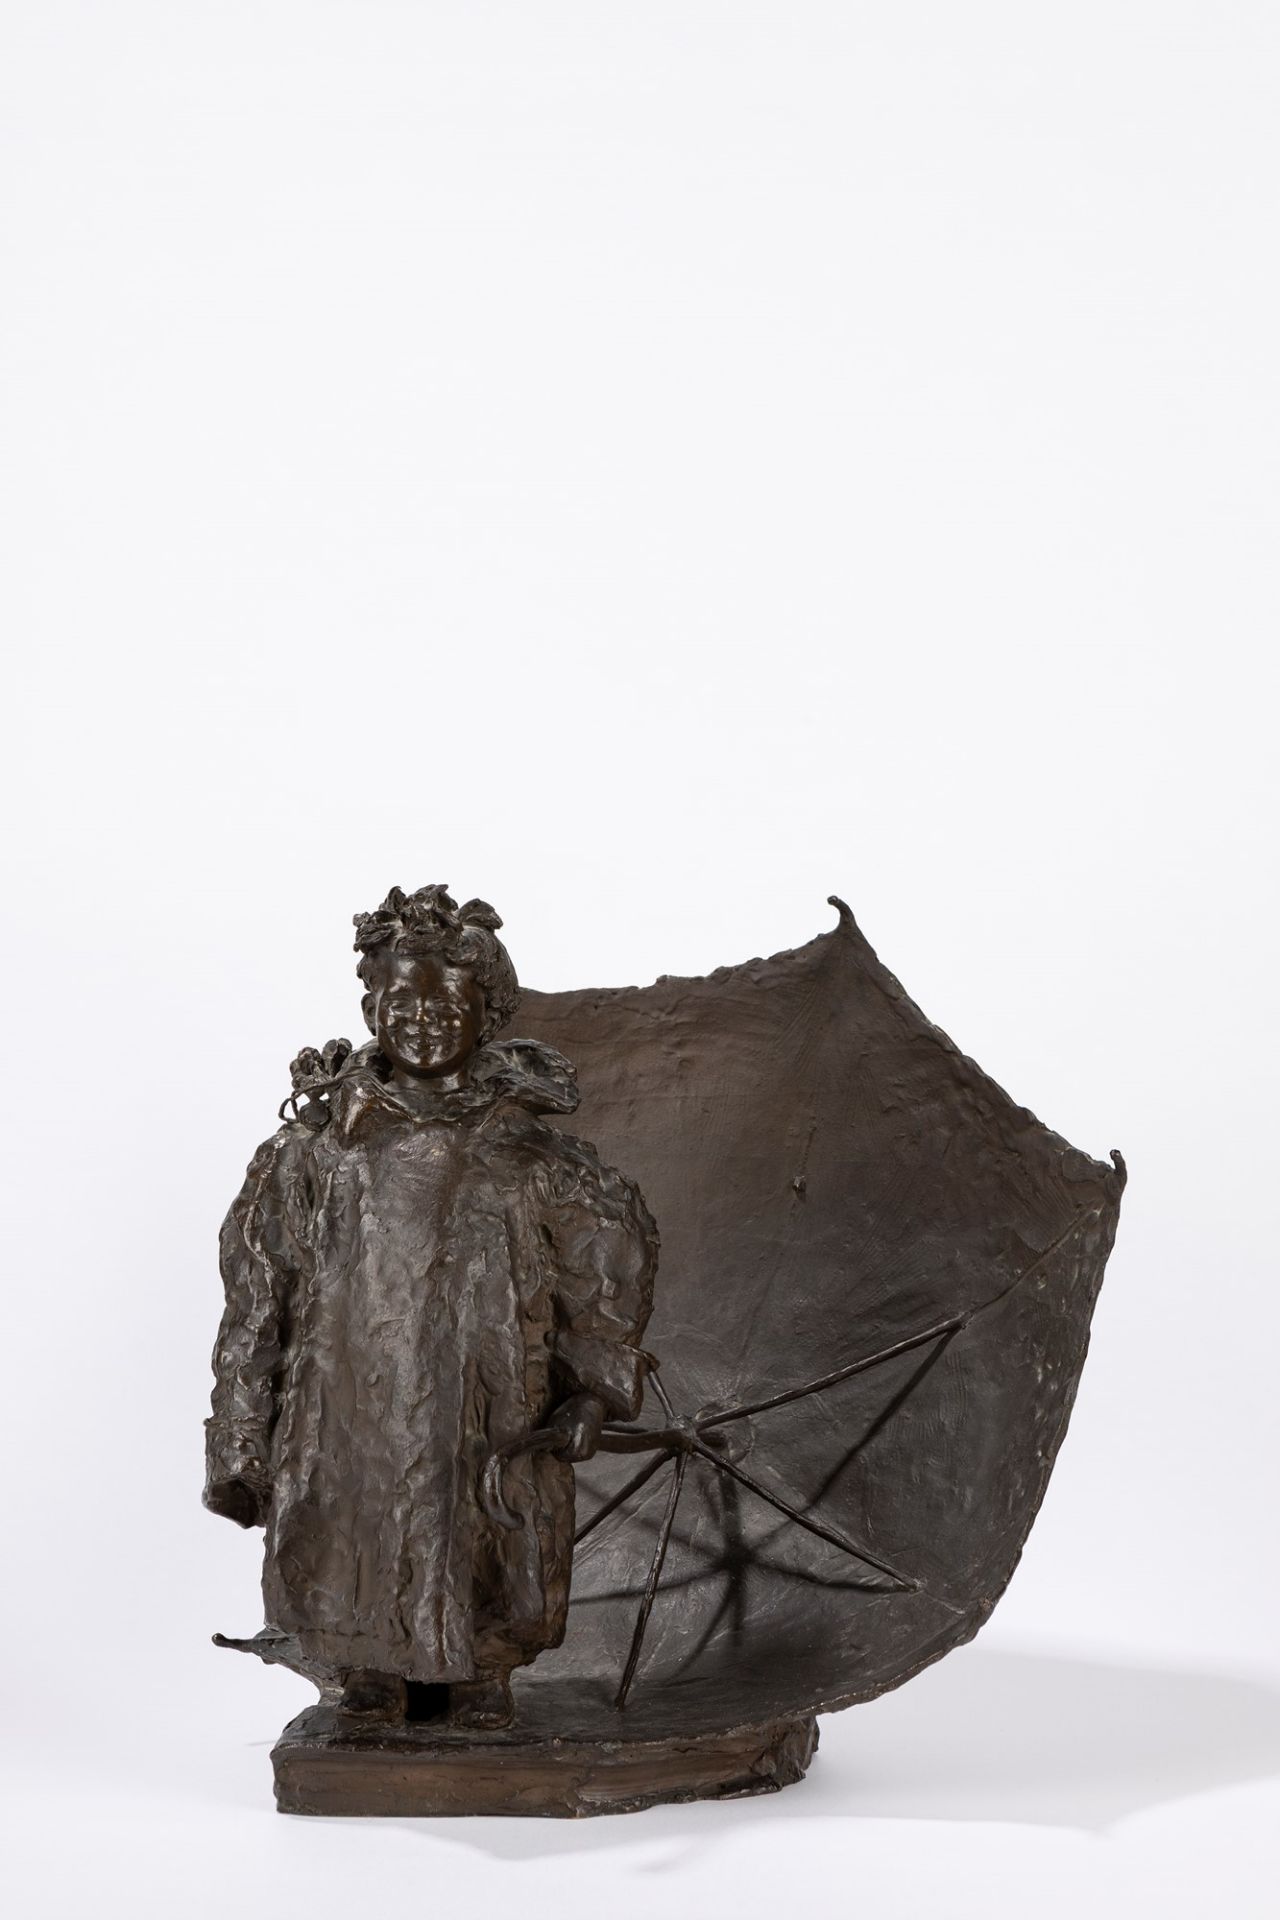 Giuseppe Renda (Polistena 1859-Napoli 1939) - Elisa with umbrella